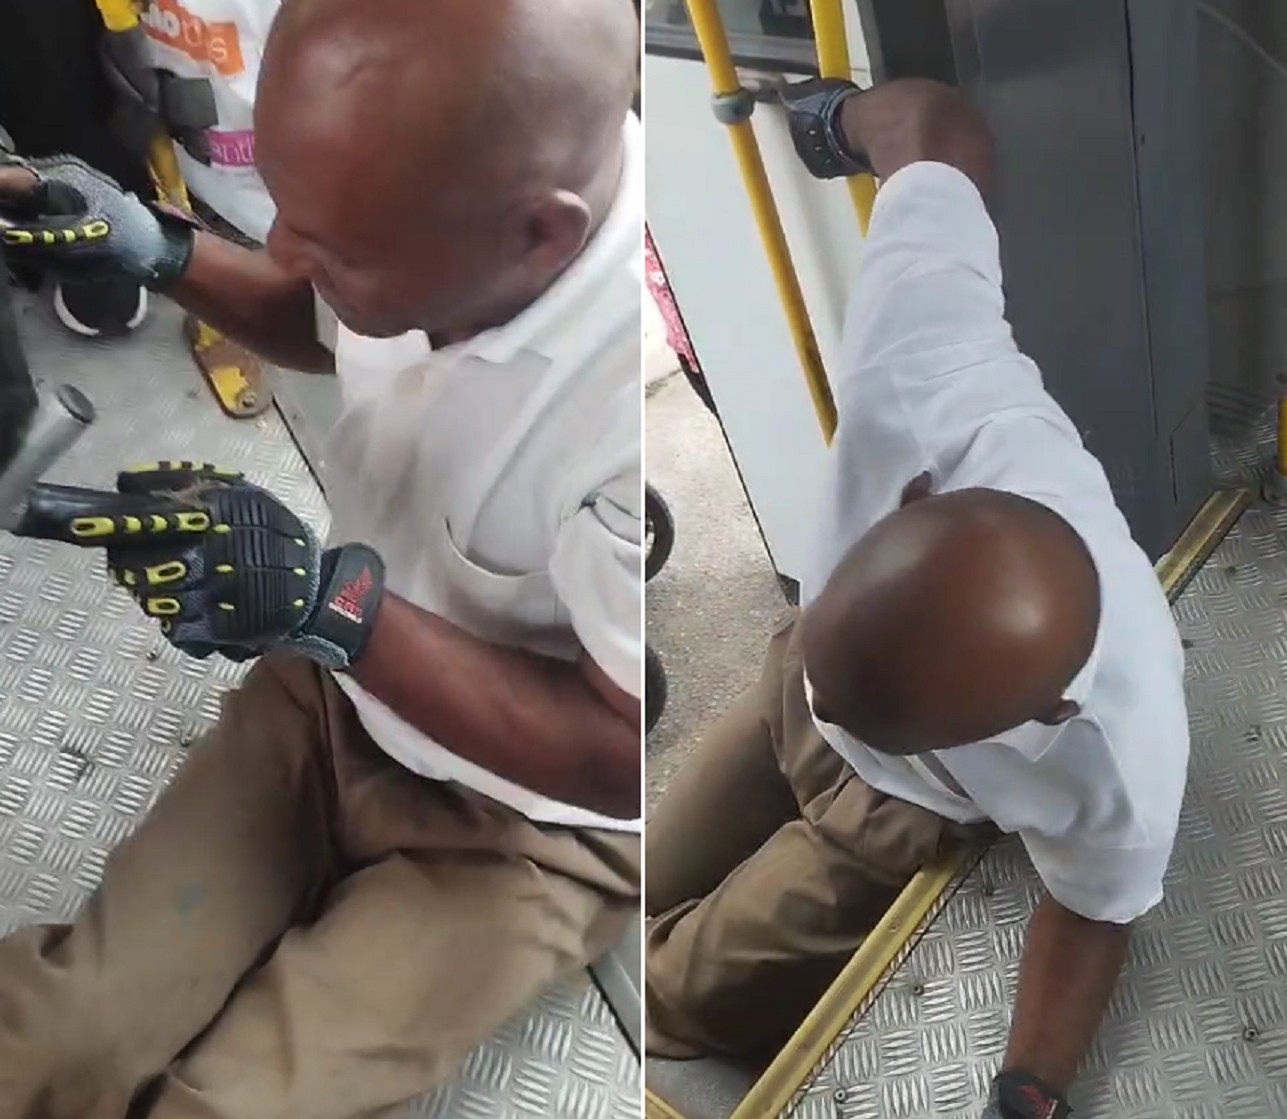 Cadeirante se arrasta pelo chão para descer de ônibus com elevador quebrado em Campos; VÍDEO